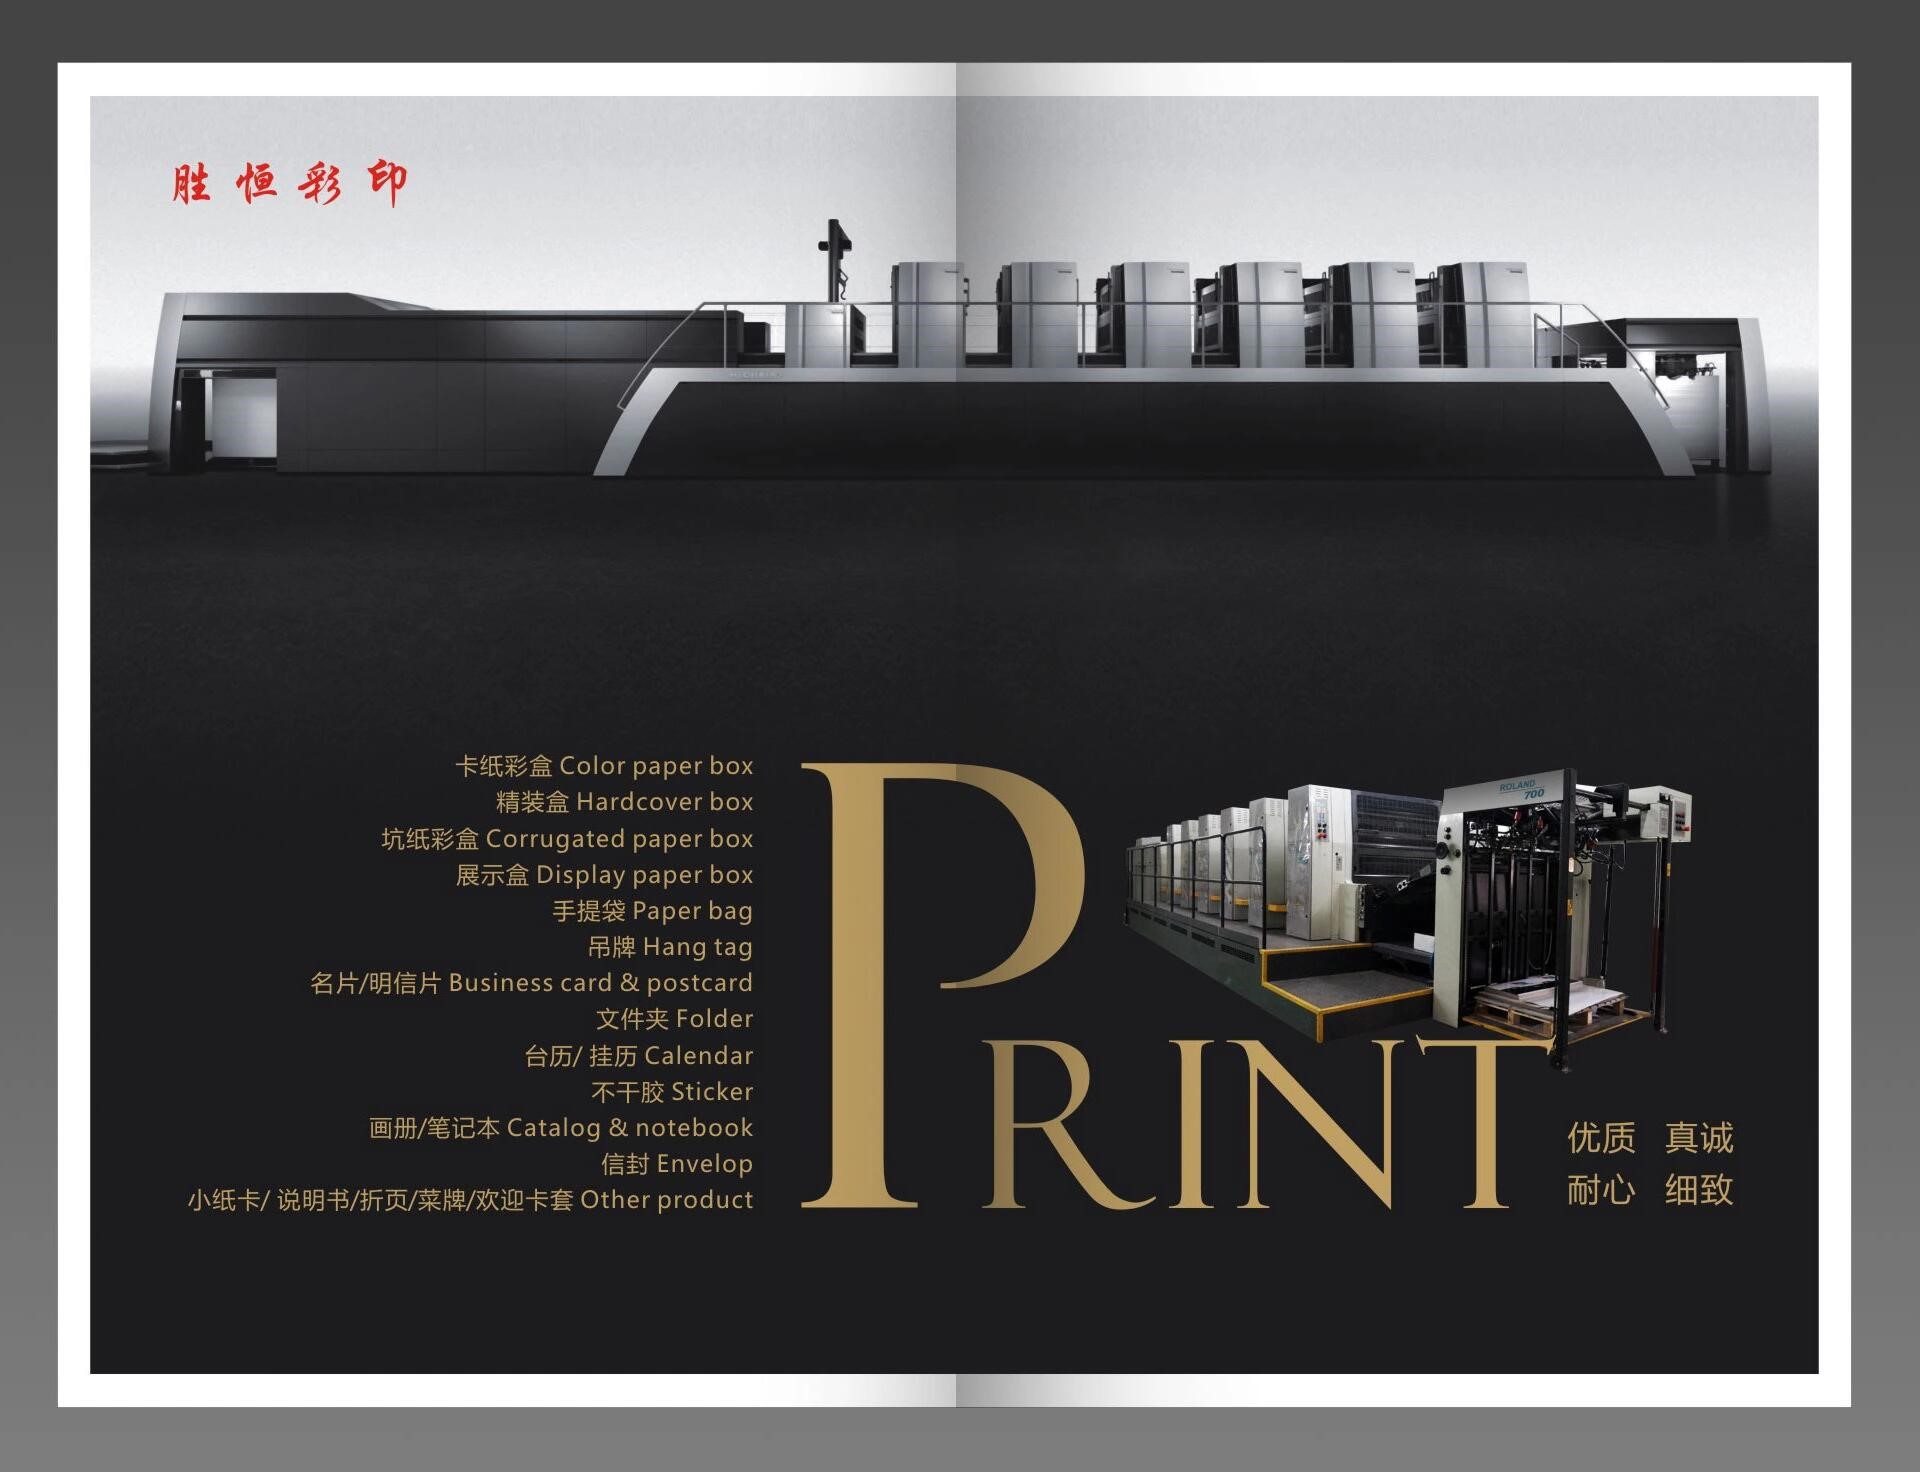 中山胜恒印刷有限公司将亮相CIPPME上海包装展